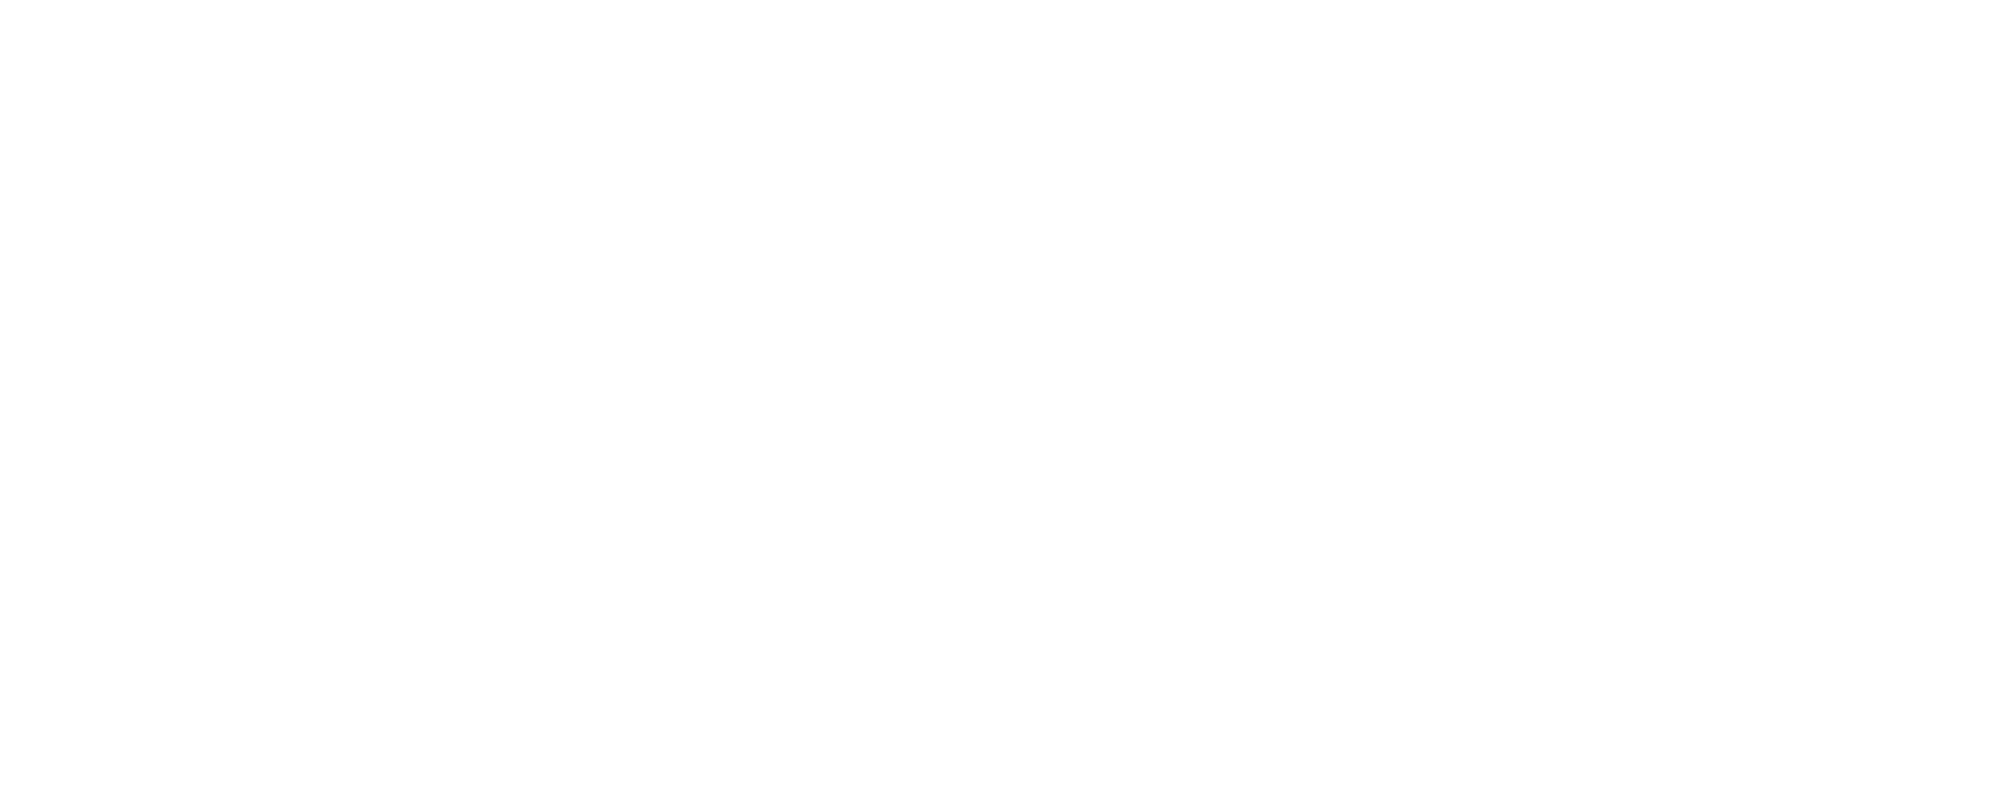 Institut Saint-Laurent, Enseignement pour adultes